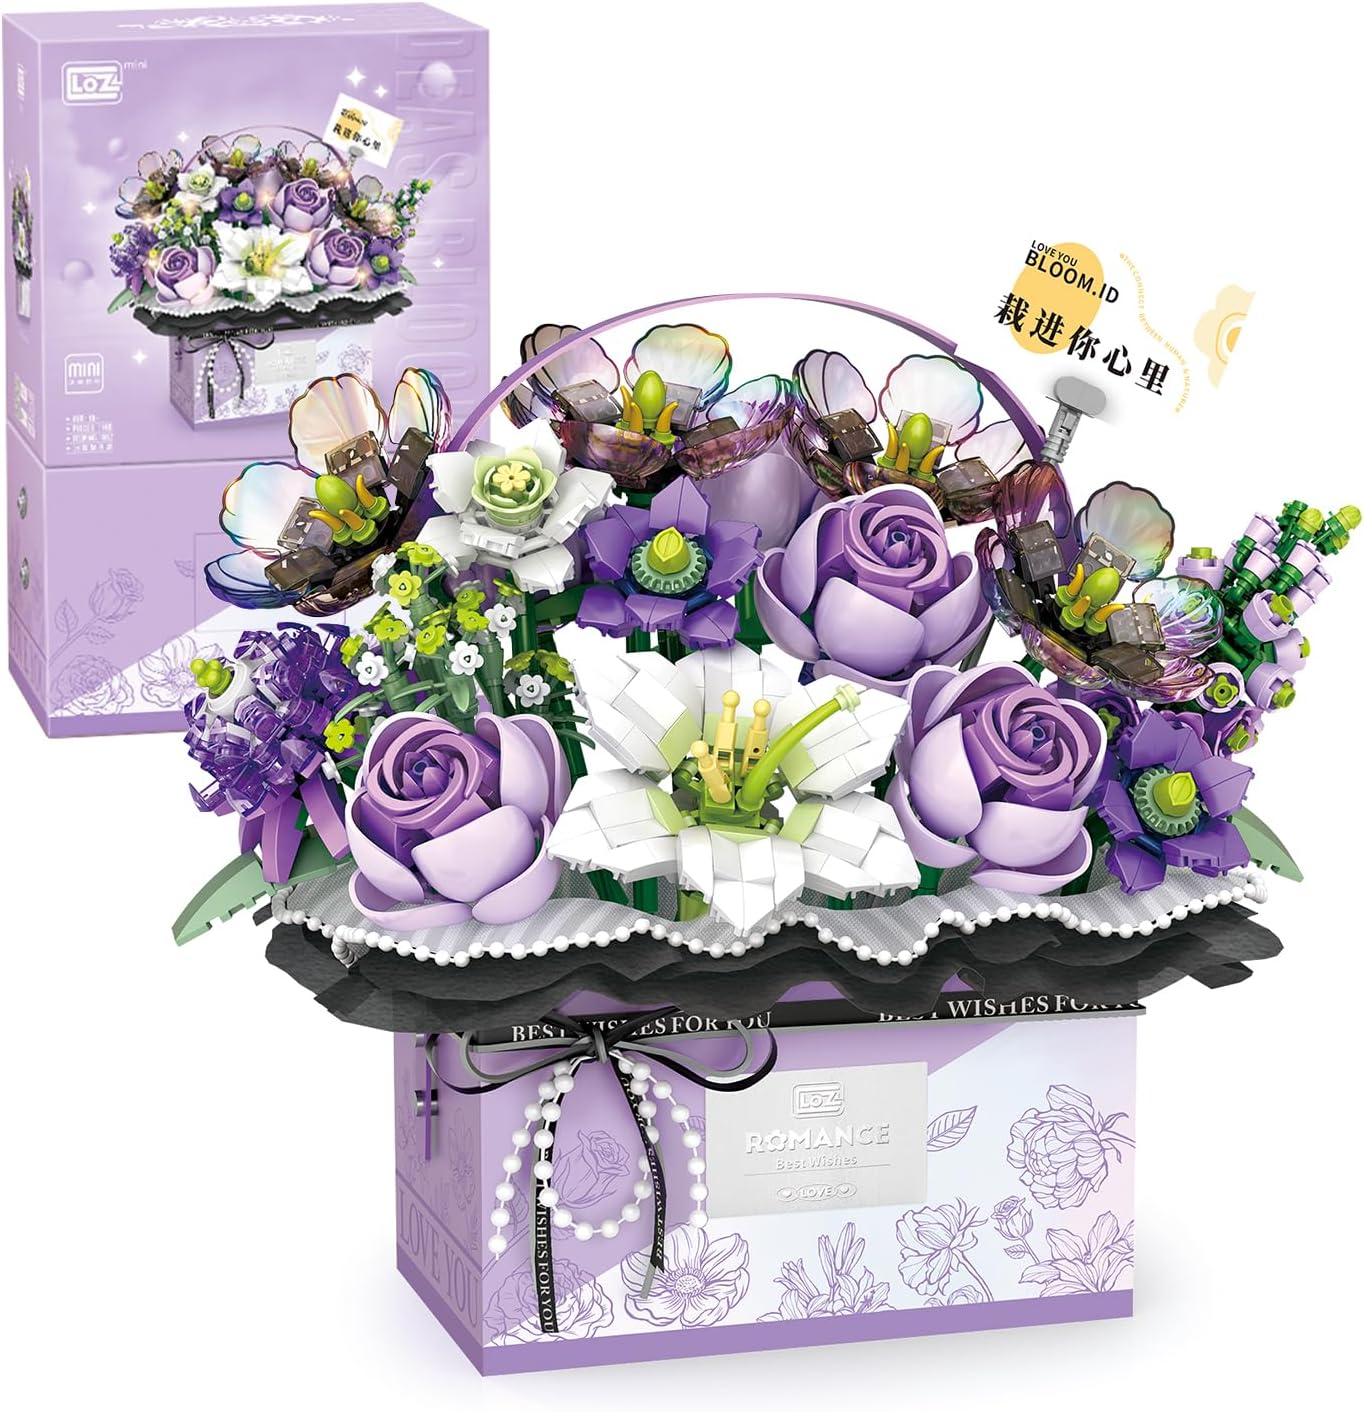 Конструктор с подсветкой LOZ Mini Block Eternal Flower Romance, фиолетовый, 1179 деталей креативная коробка для колец с цветком розы бархатный держатель с цветами подарочная коробка для свадьбы помолвки дня святого валентина